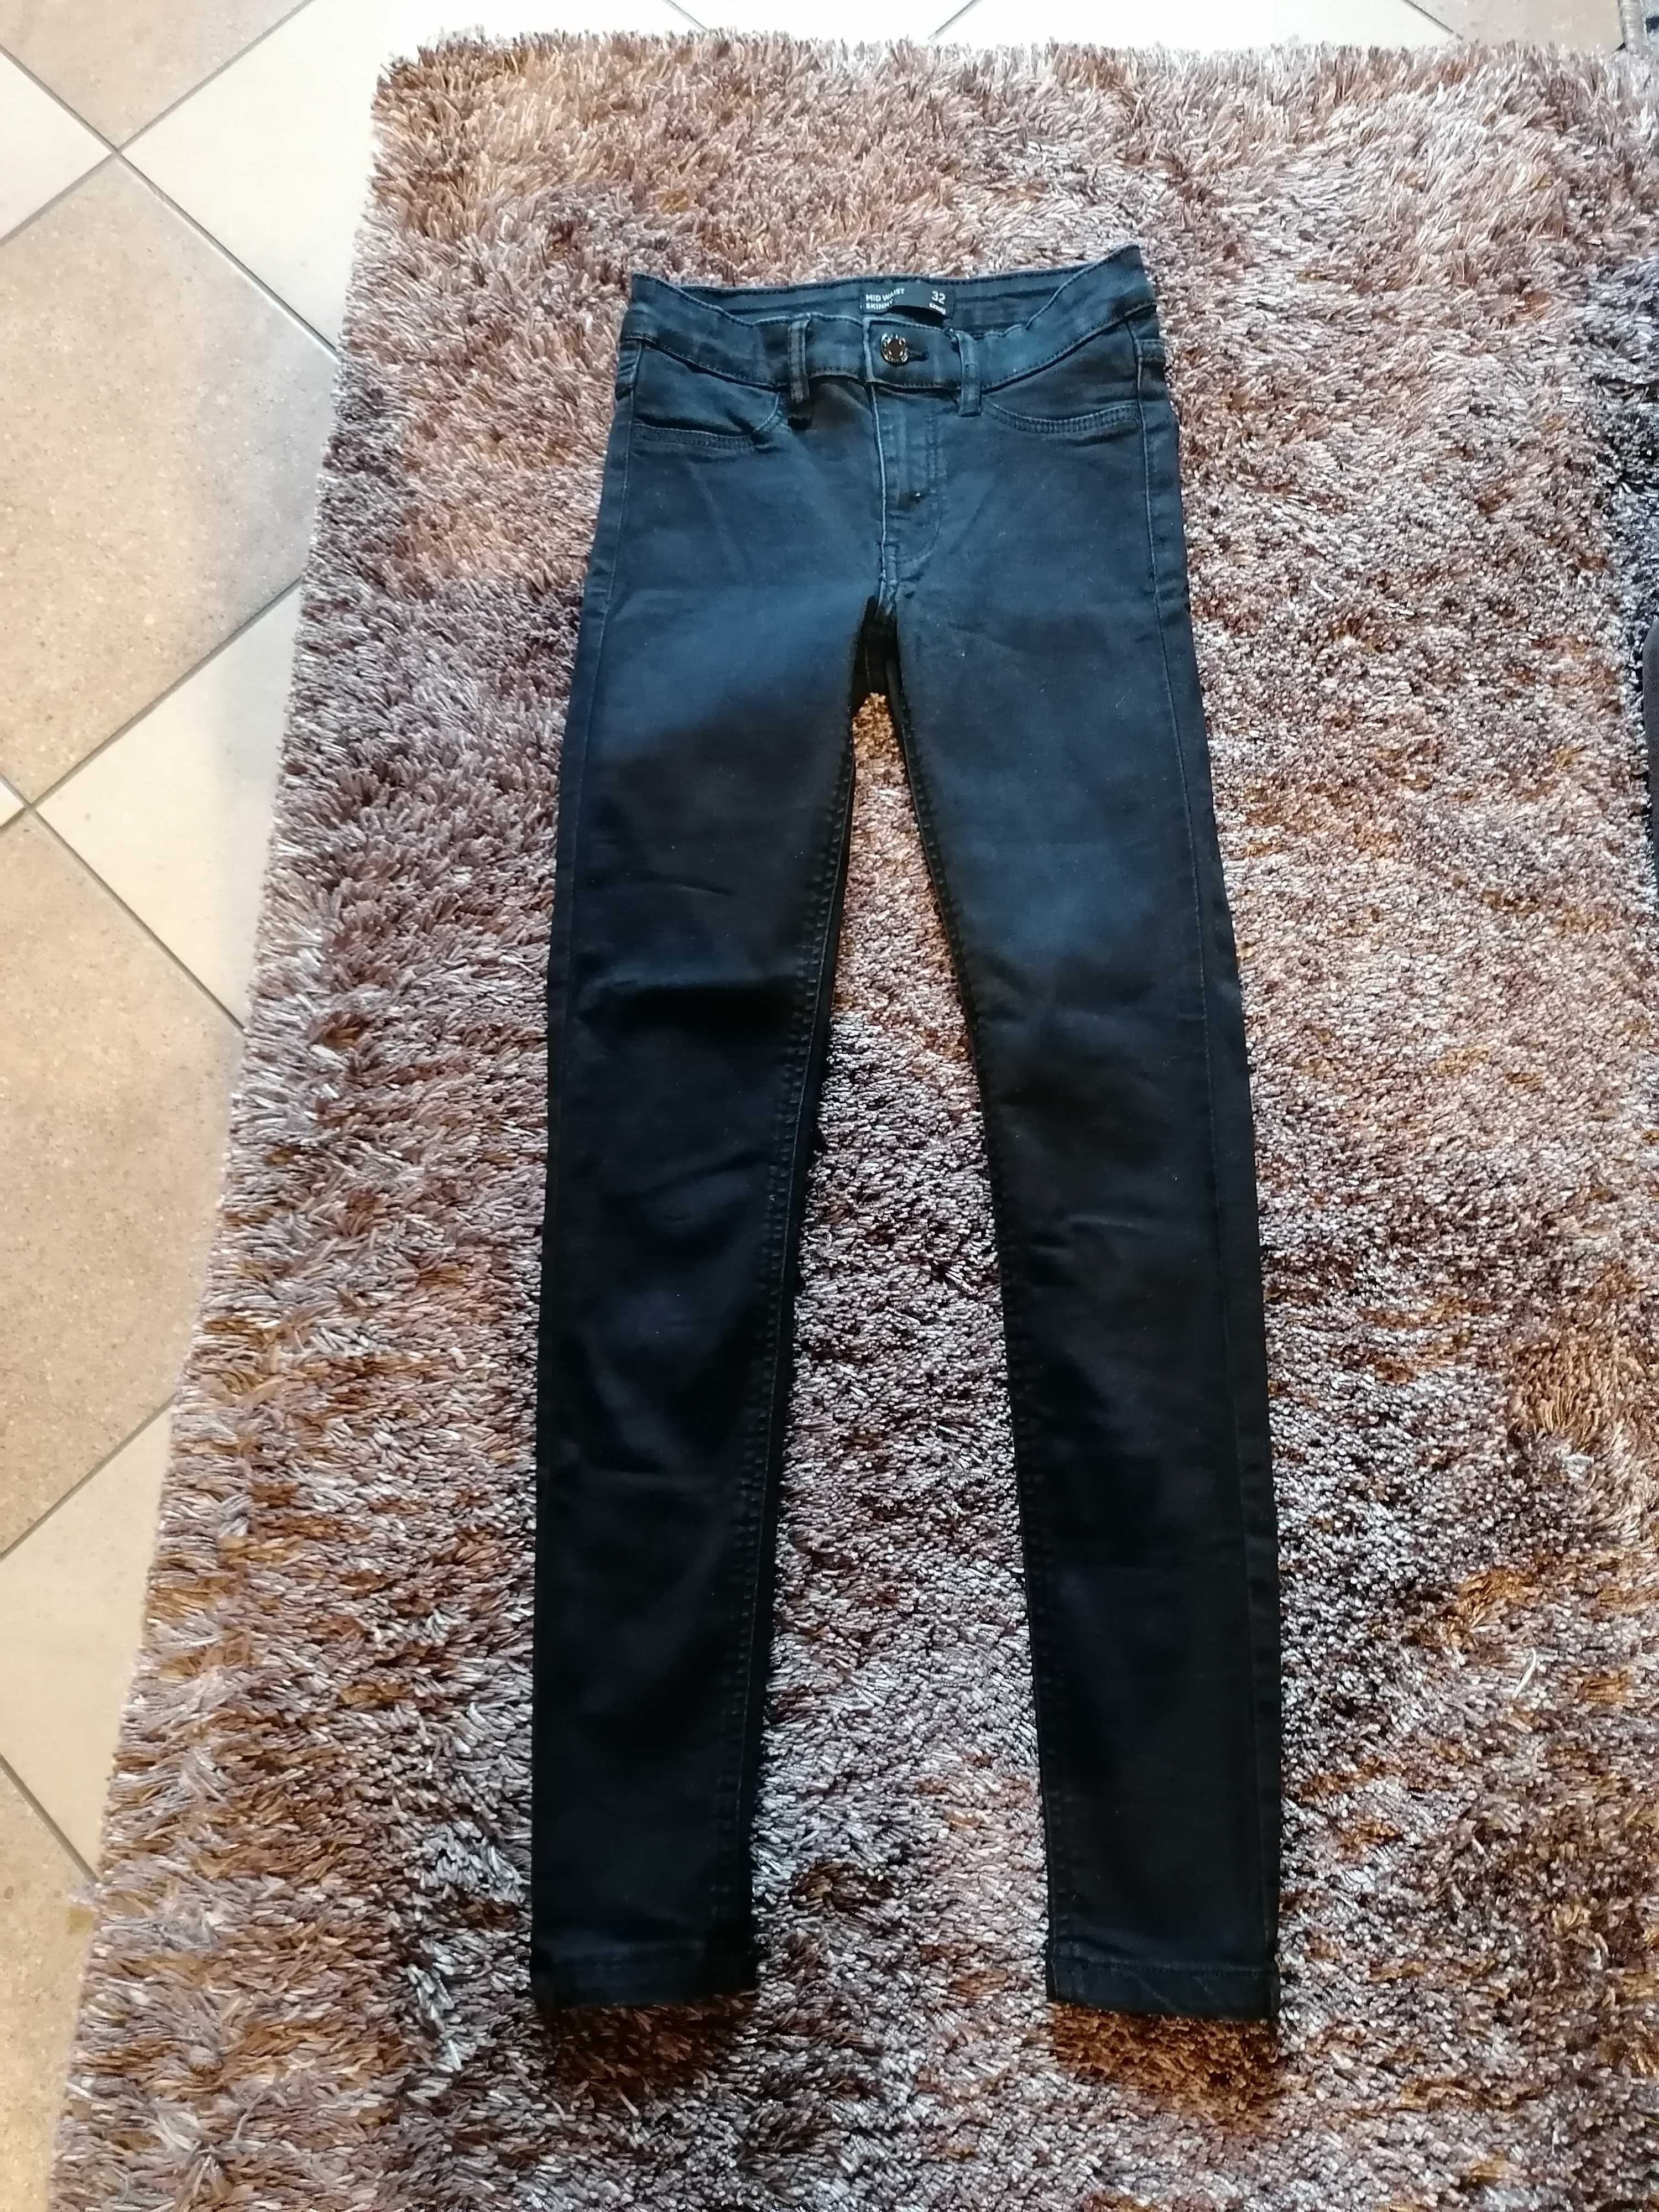 Spodnie czarne, damskie r32, sinsay